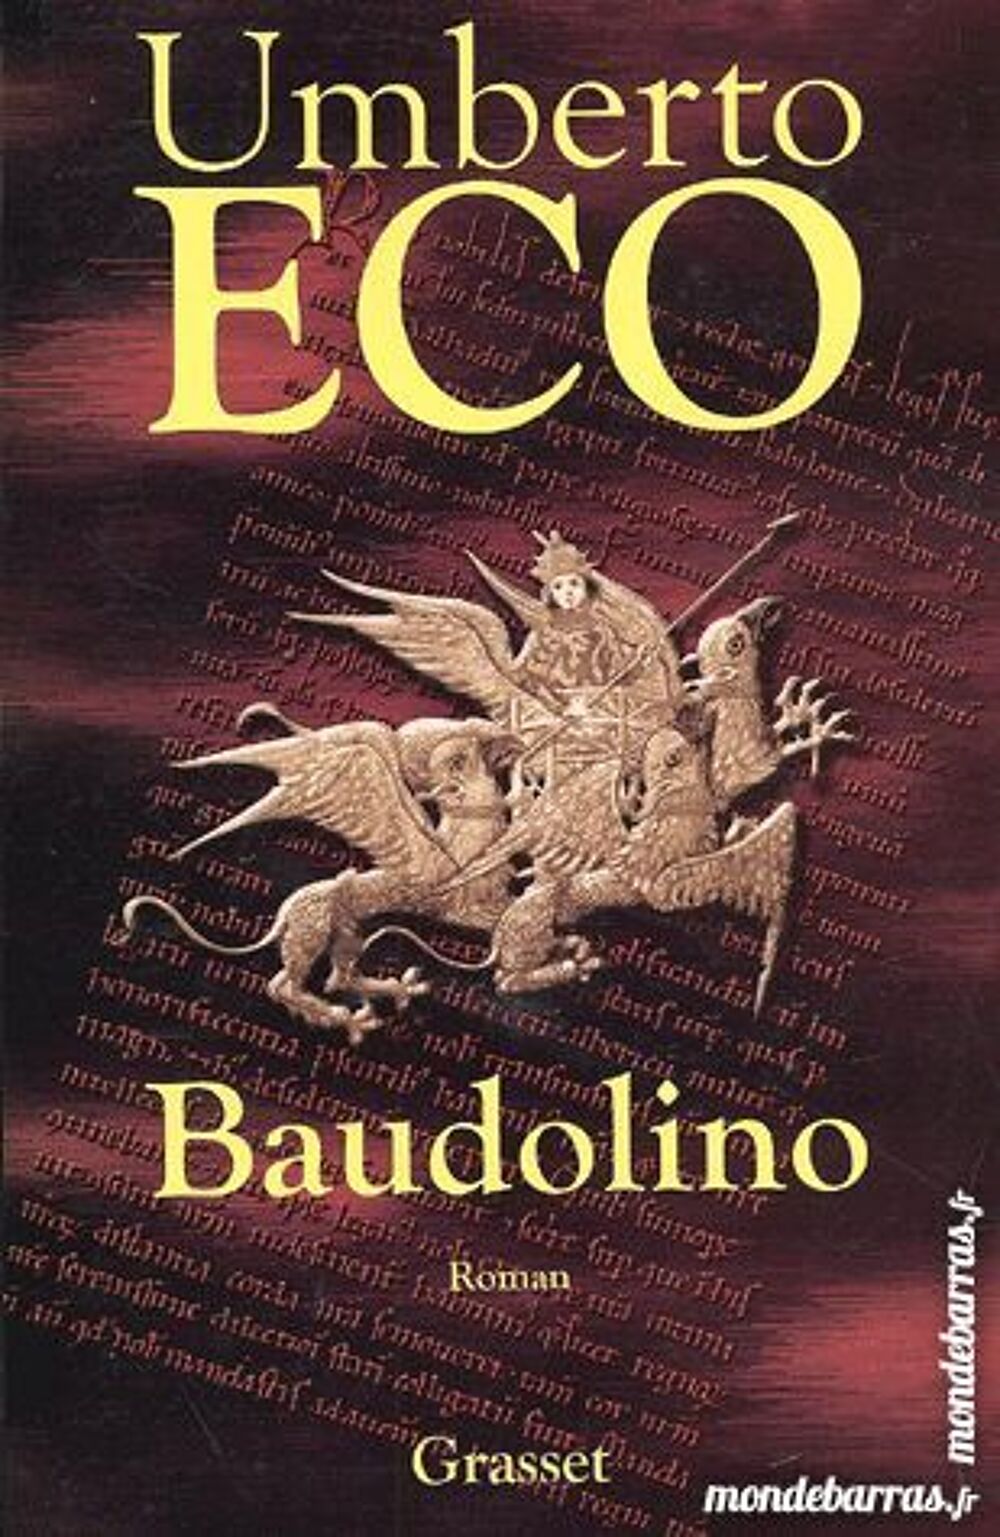 Baudolino - d'Umberto Eco Livres et BD